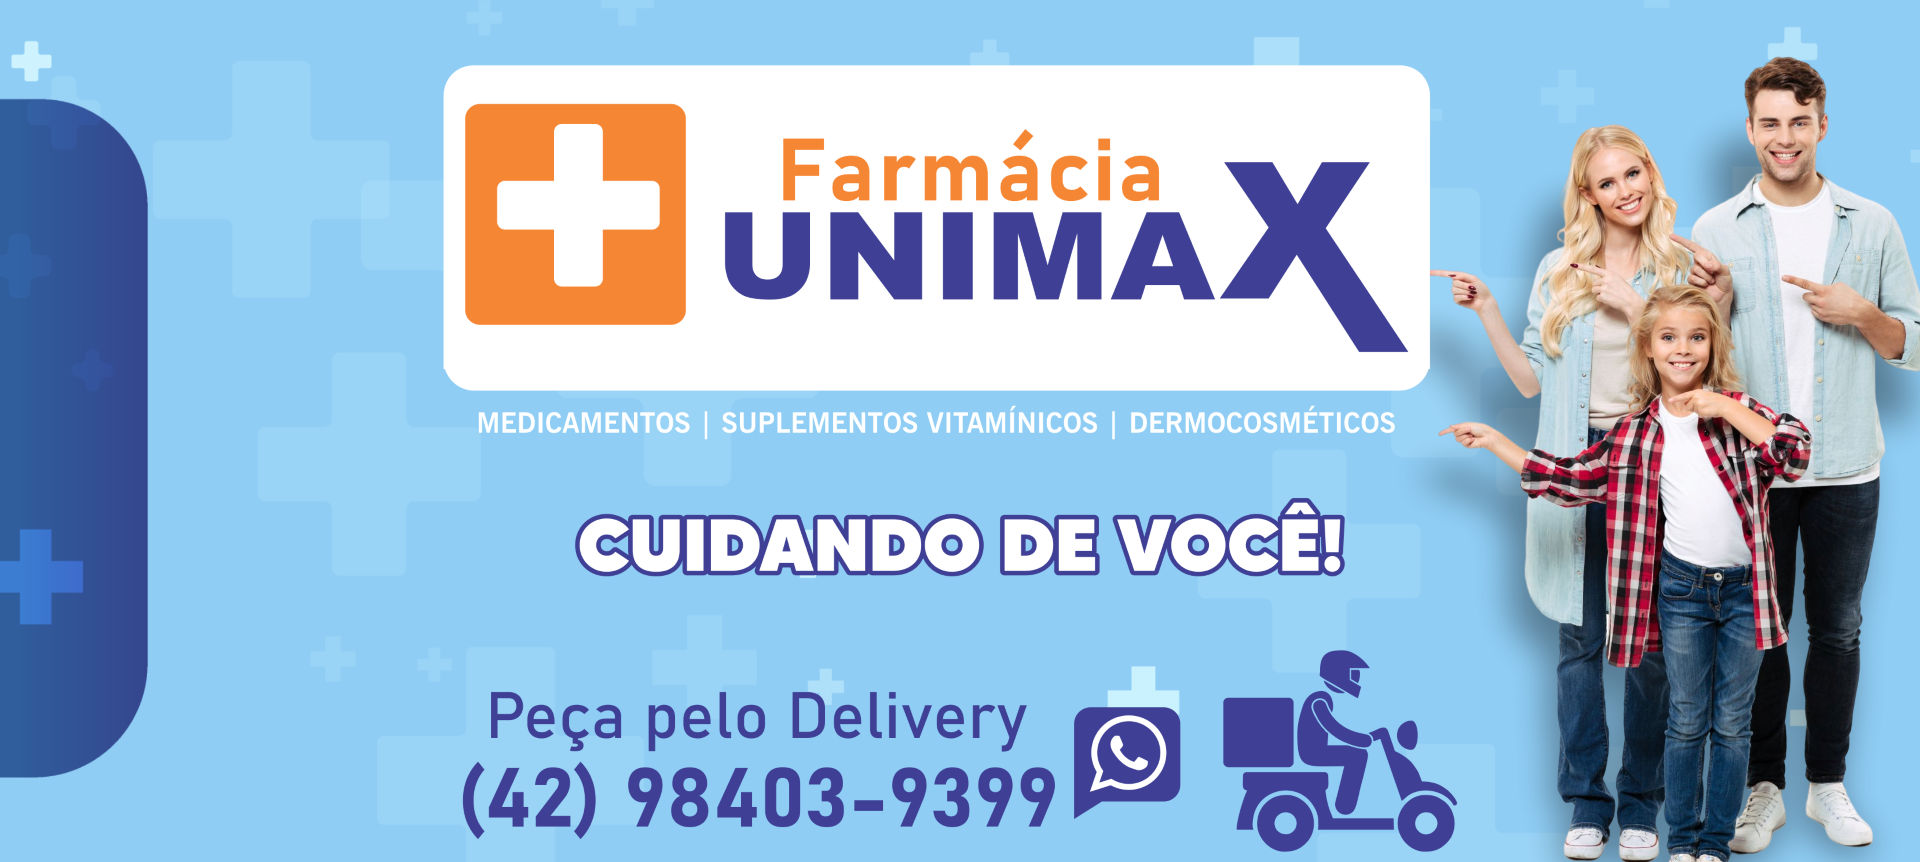 Farmácia Unimax